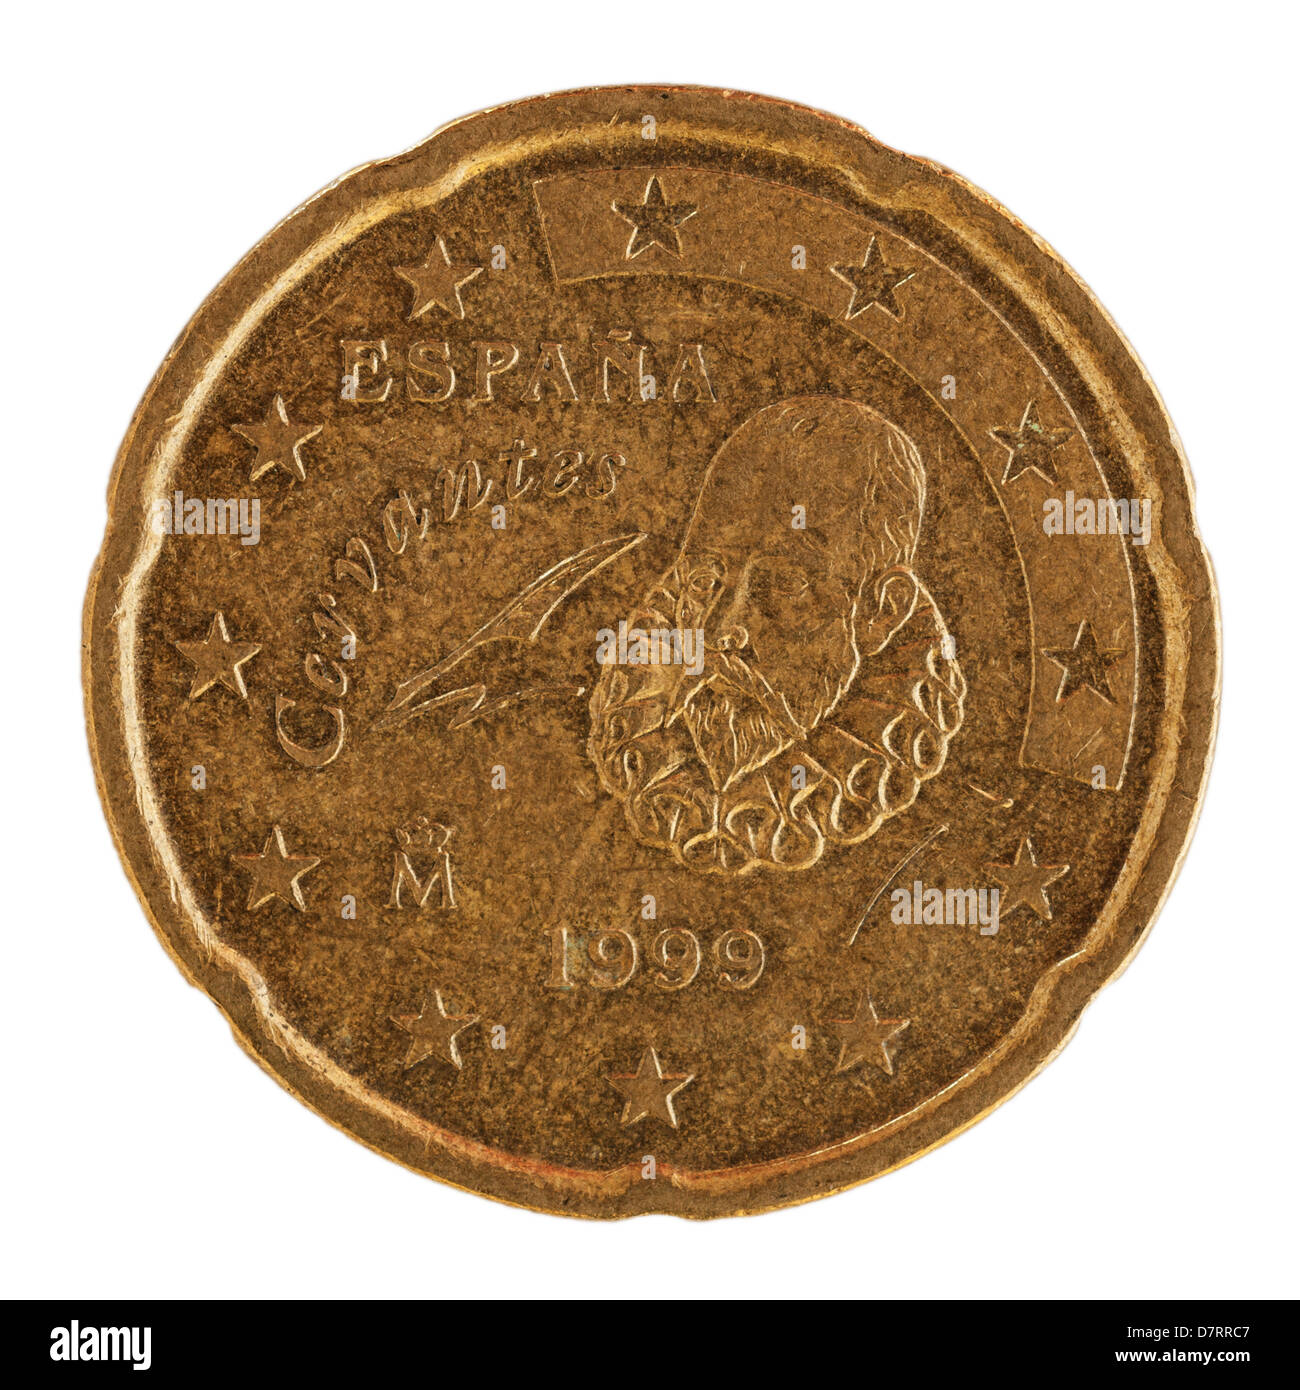 Espagne - 2019 - 1 euro - Coins - Euros - Spain